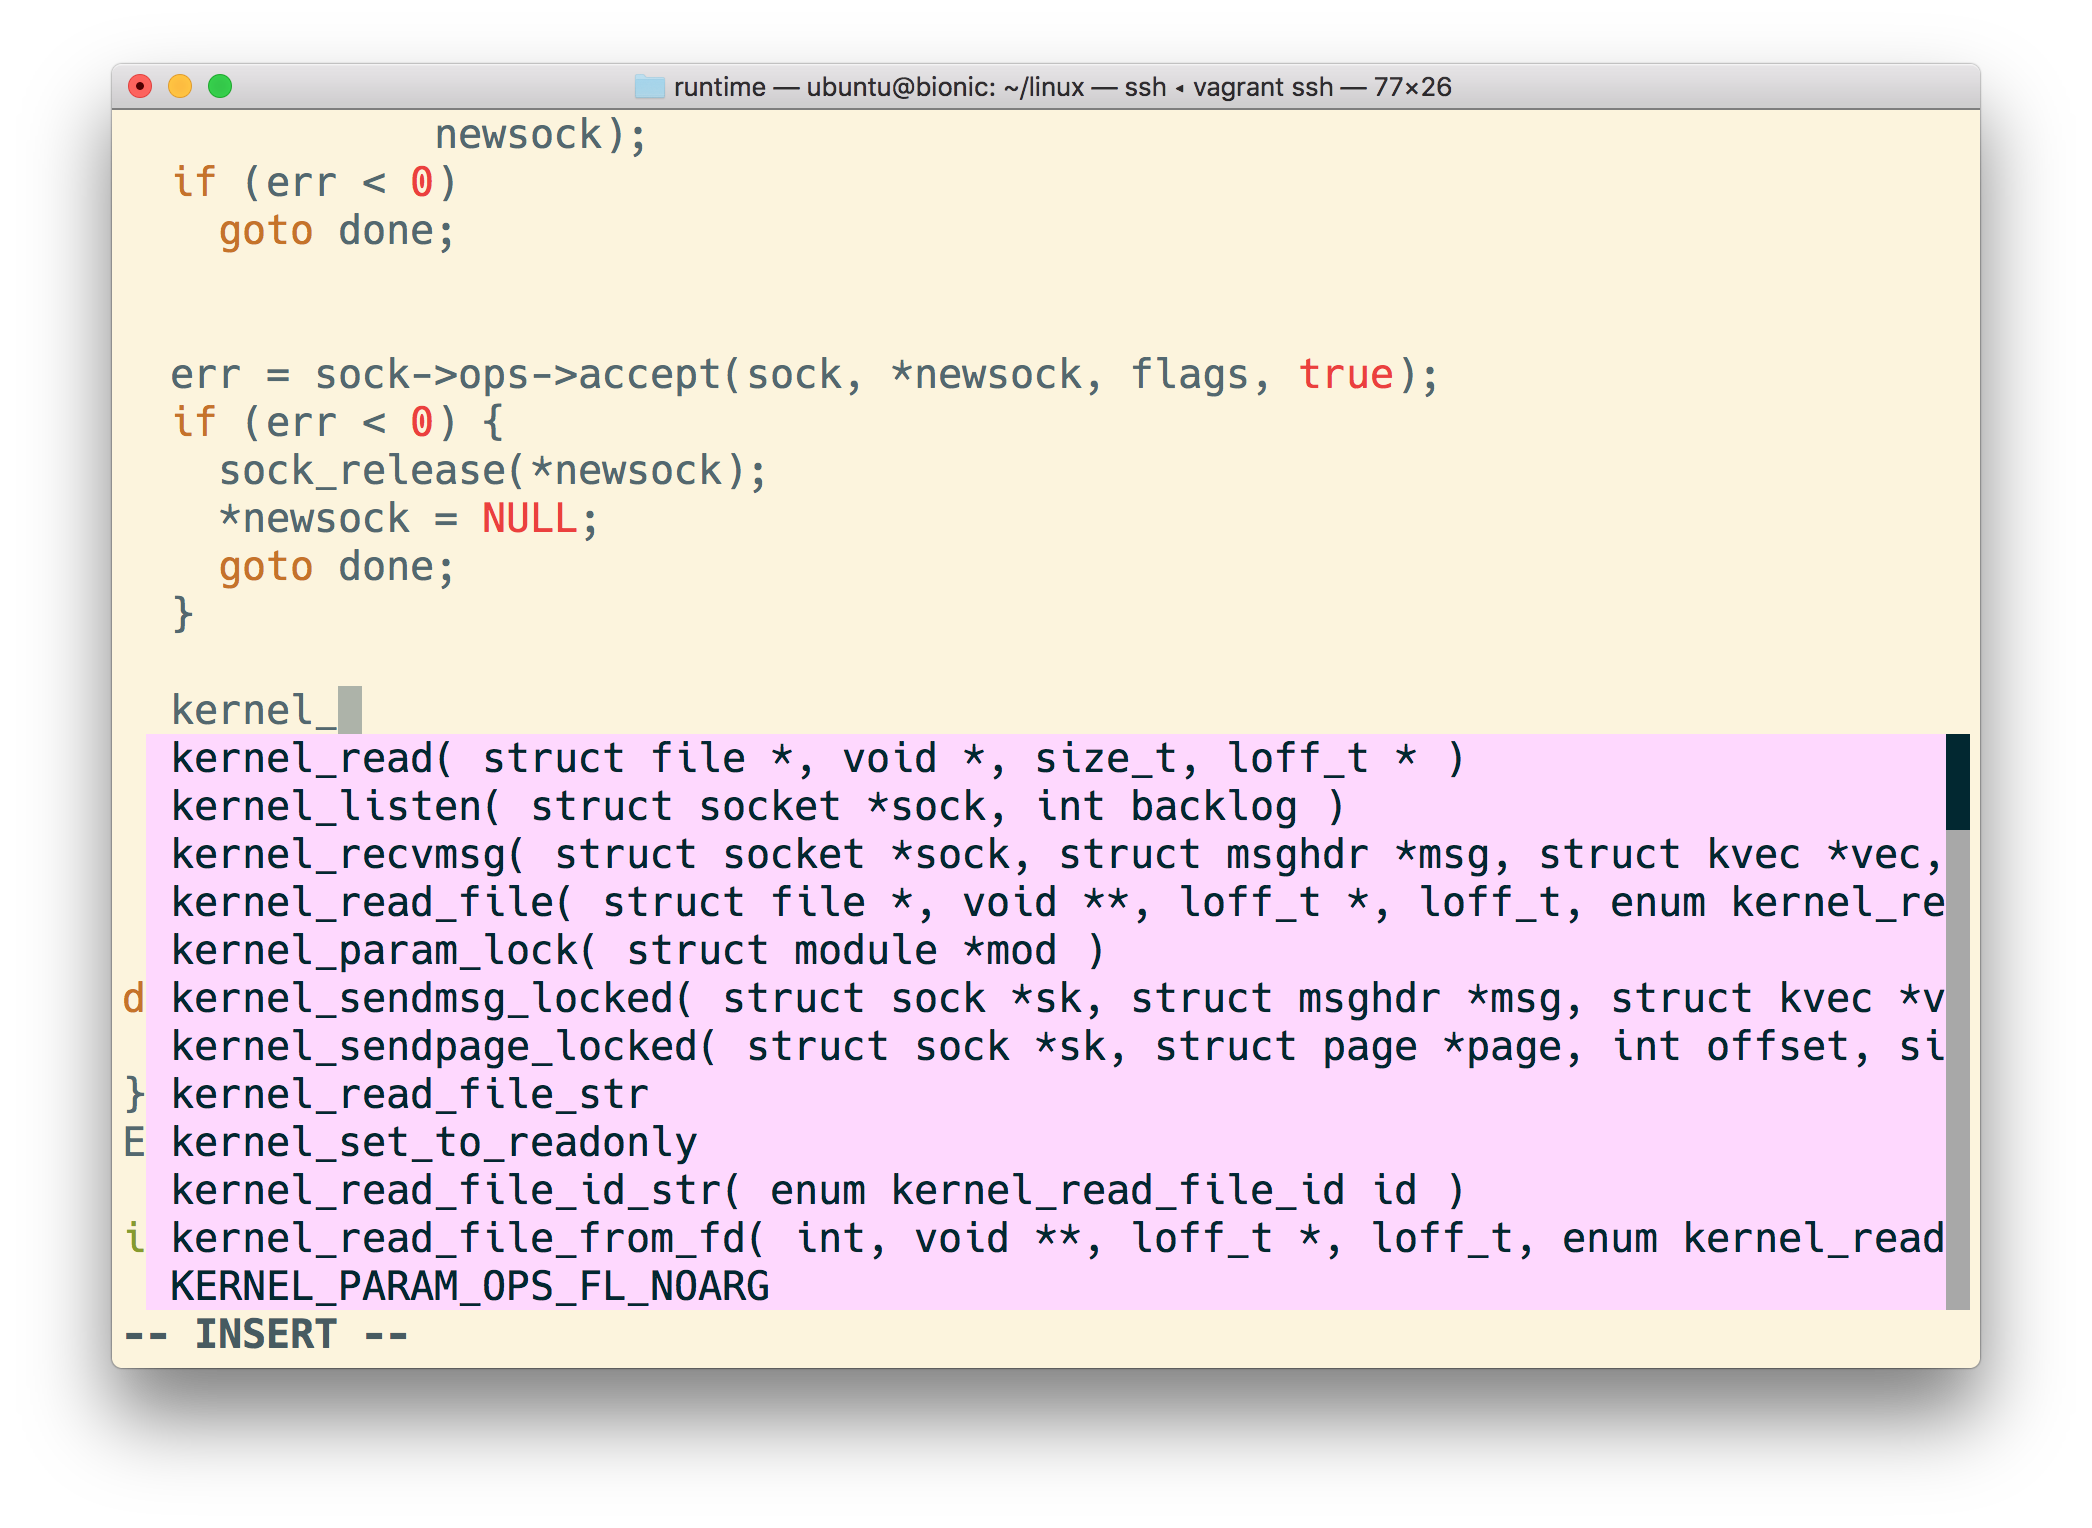 códigos constituyentes principales del kernel de linux